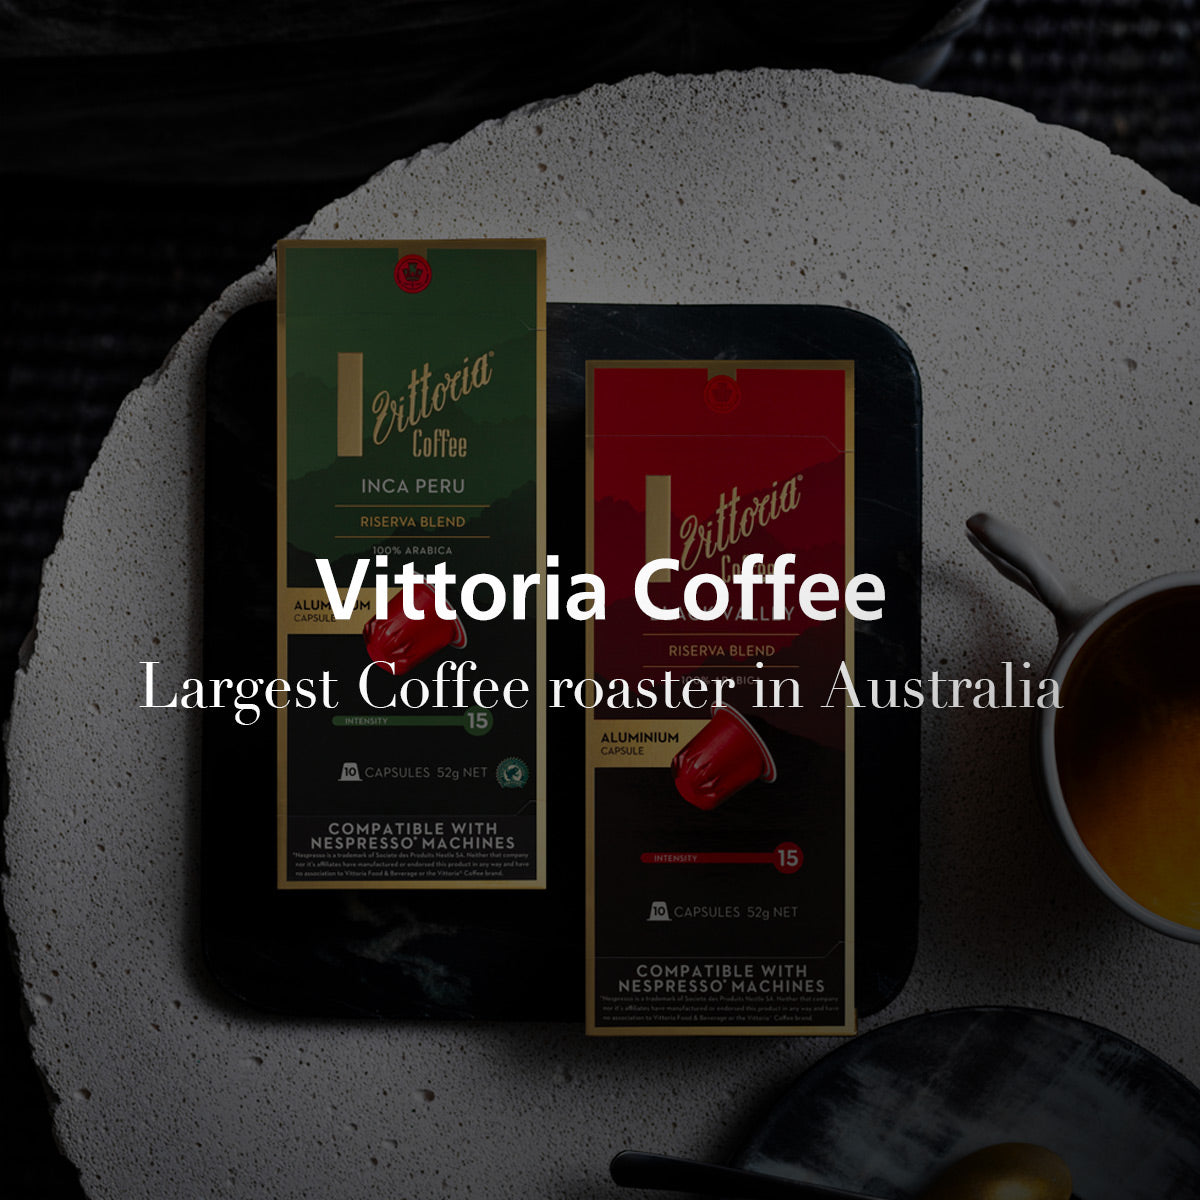 Vittoria Coffee 澳洲大廠精品咖啡膠囊